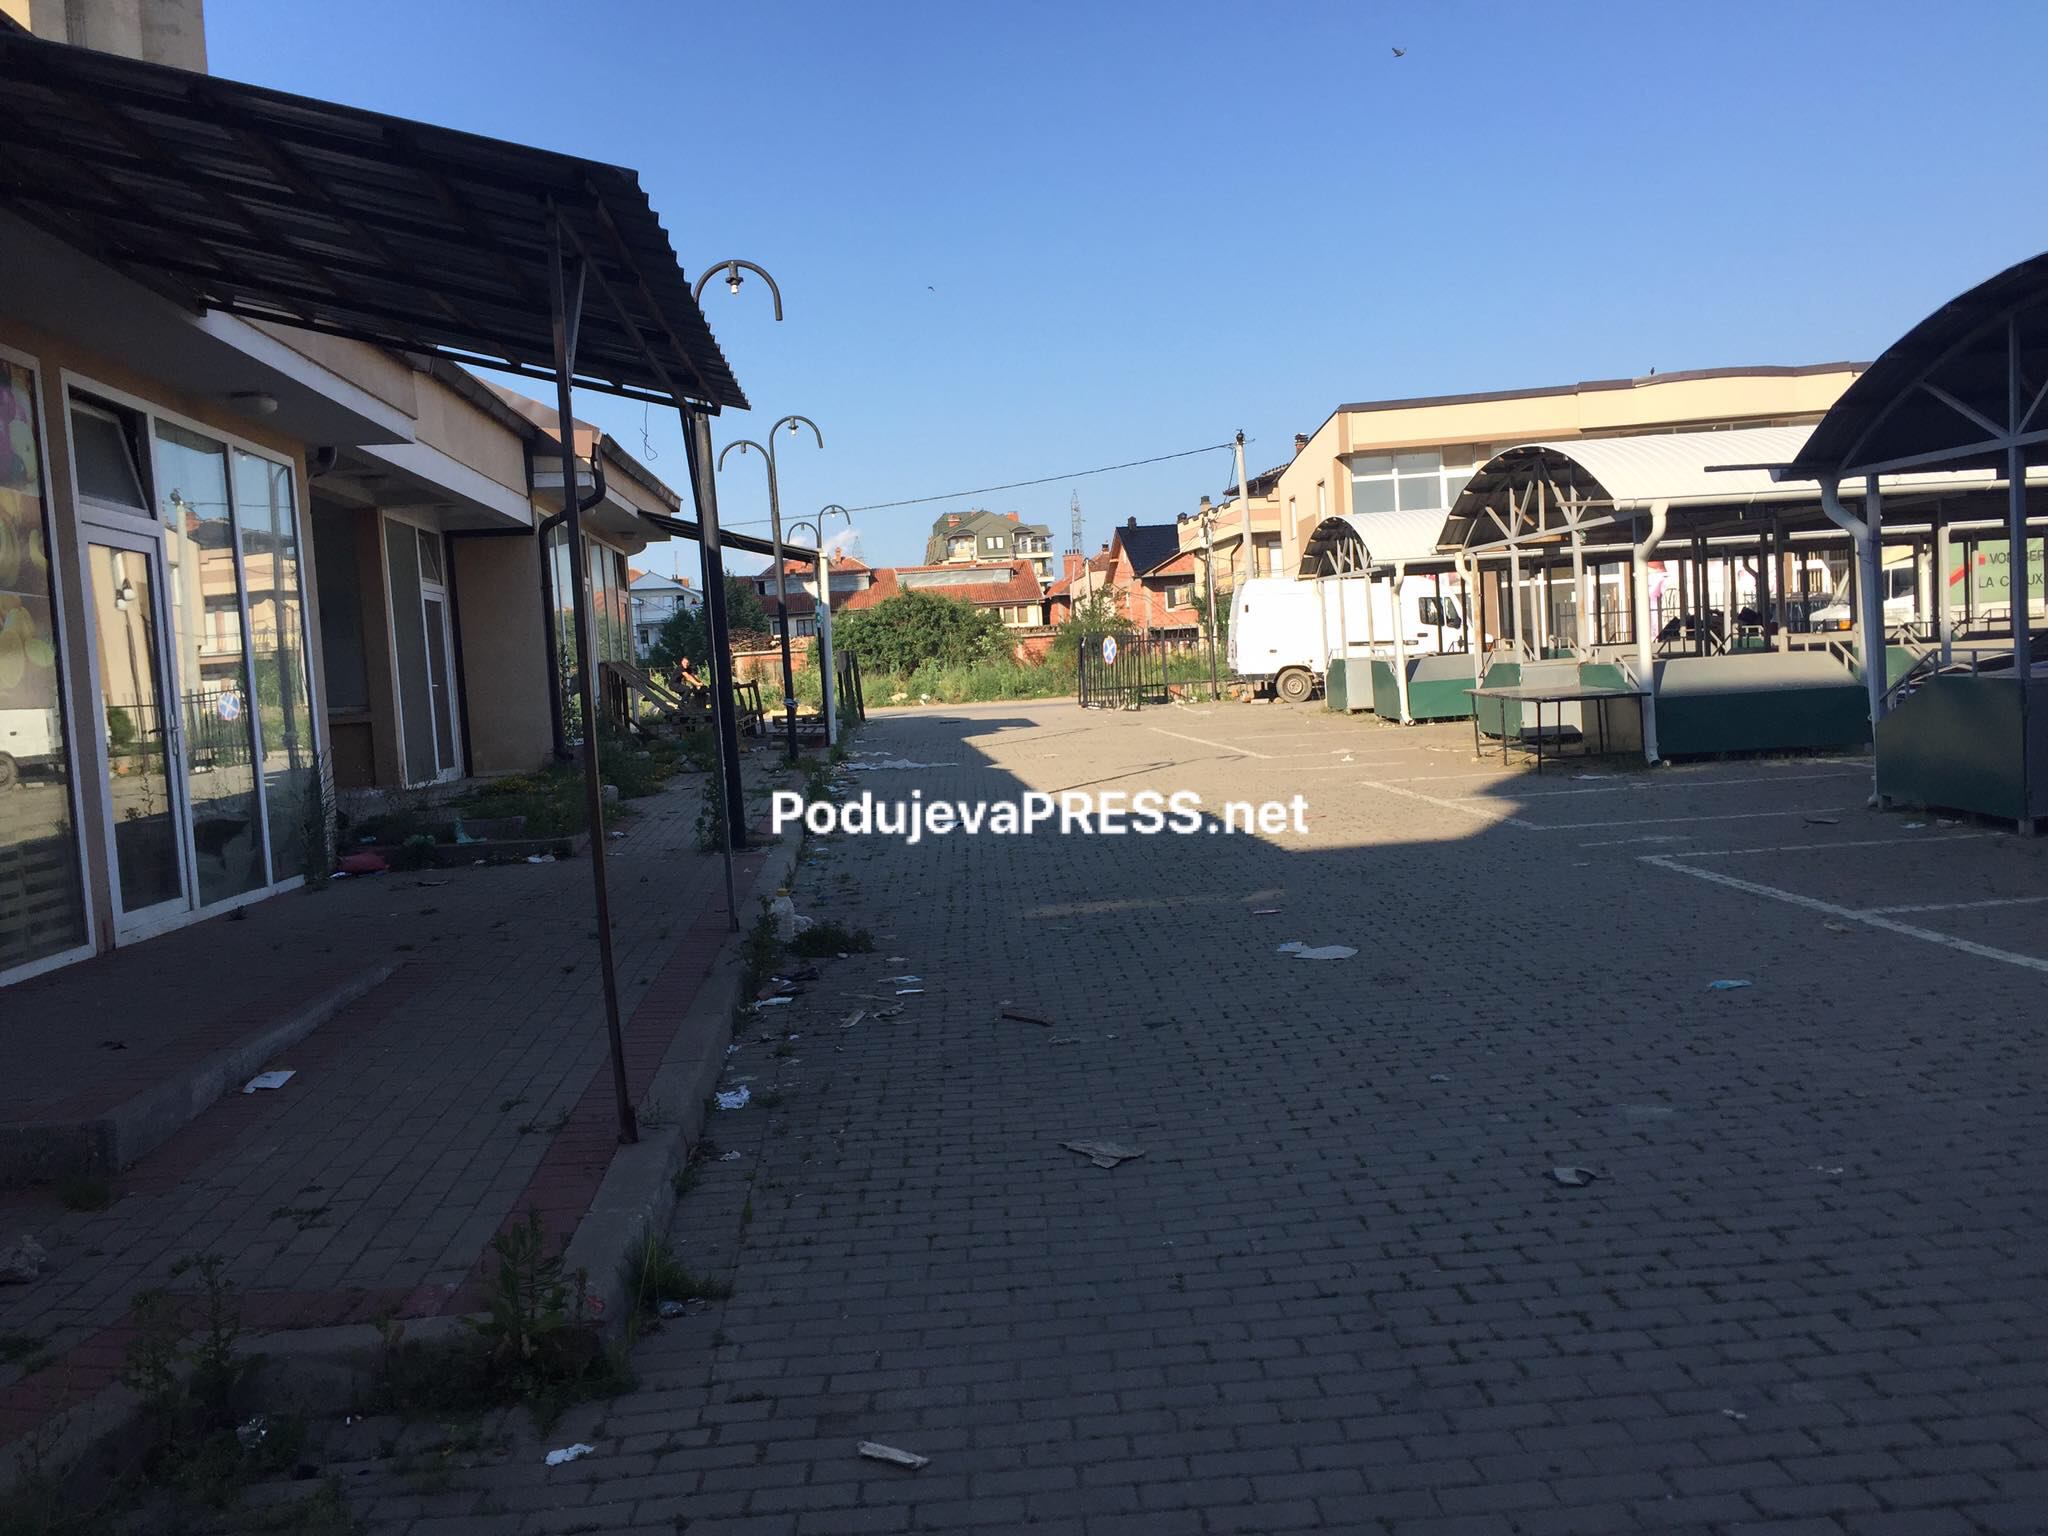  Komuna e Podujevës do t’i japë në shfrytëzim lokalet e Tregut të qytetit